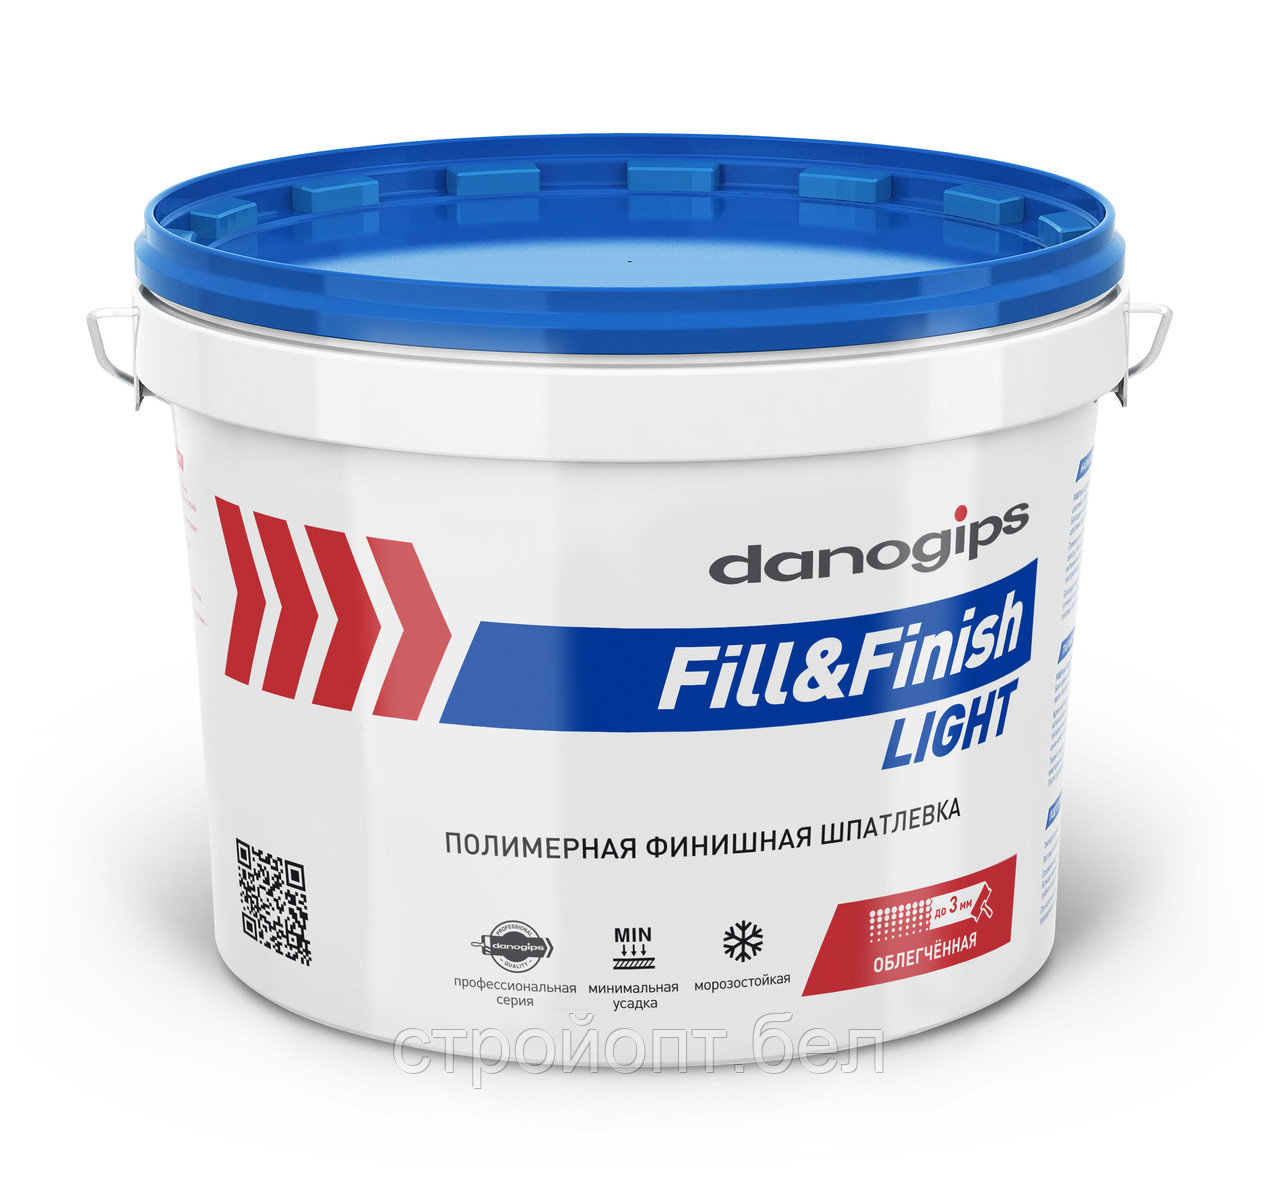 Финишная полимерная шпатлевка DANOGIPS Fill&Finish Light, 12,3 кг, РФ